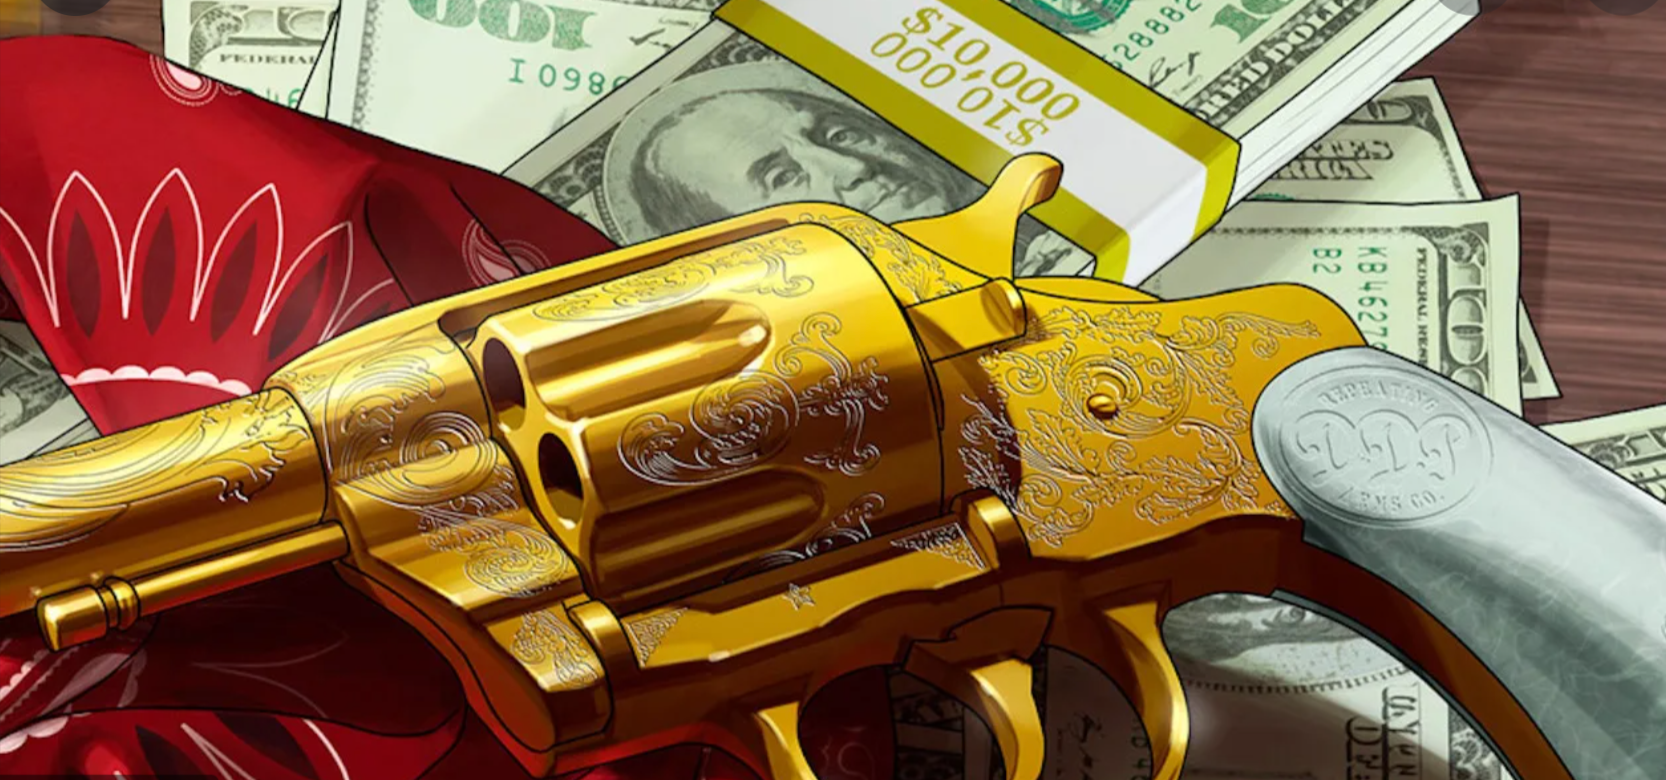 Red Dead 2 Gold revolver 